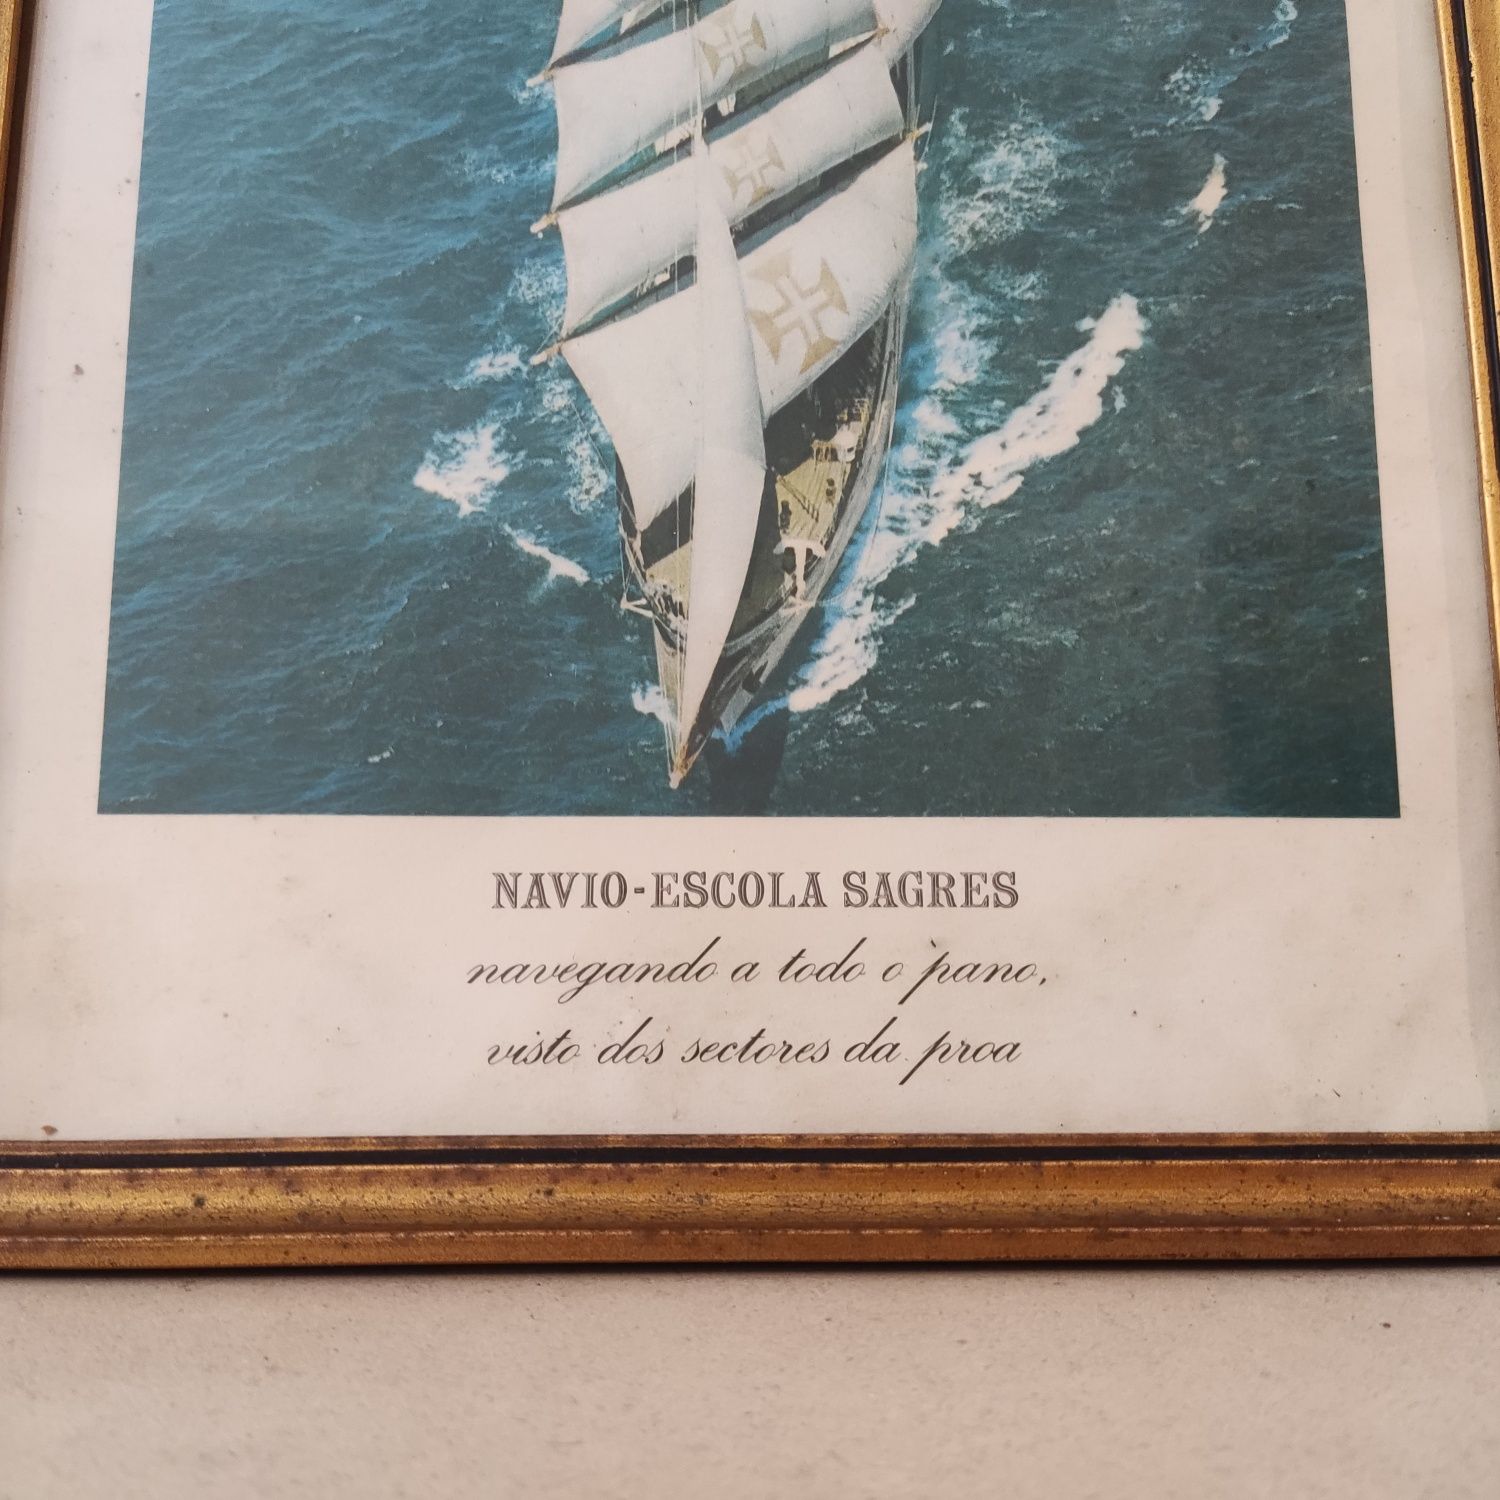 2 pequenos quadros antigos com imagens do Navio Escola Sagres